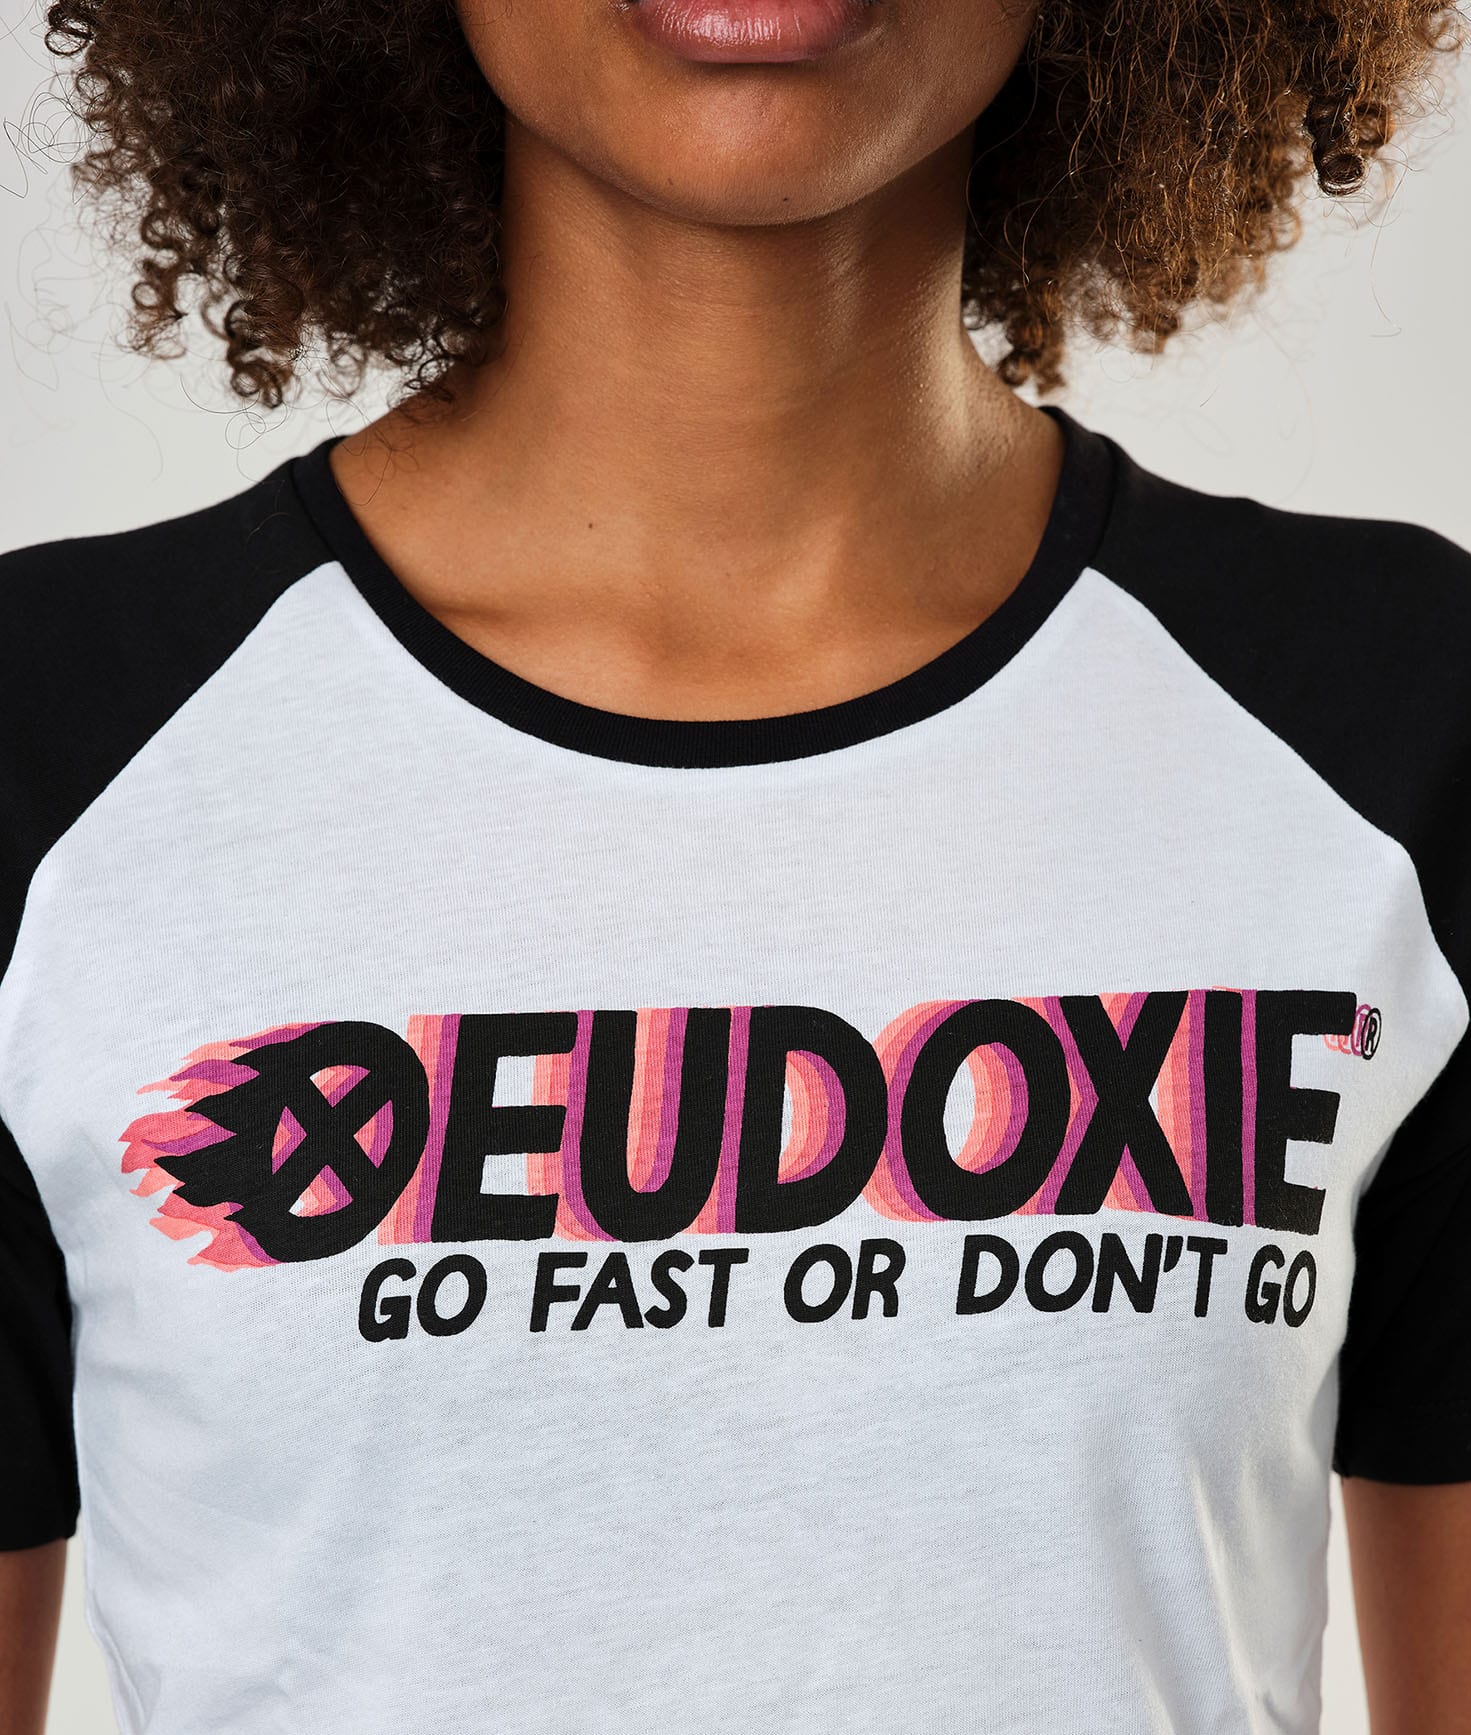 Eudoxie Flame Baseball T-Shirt Short Sleeve - Large - Bild 3